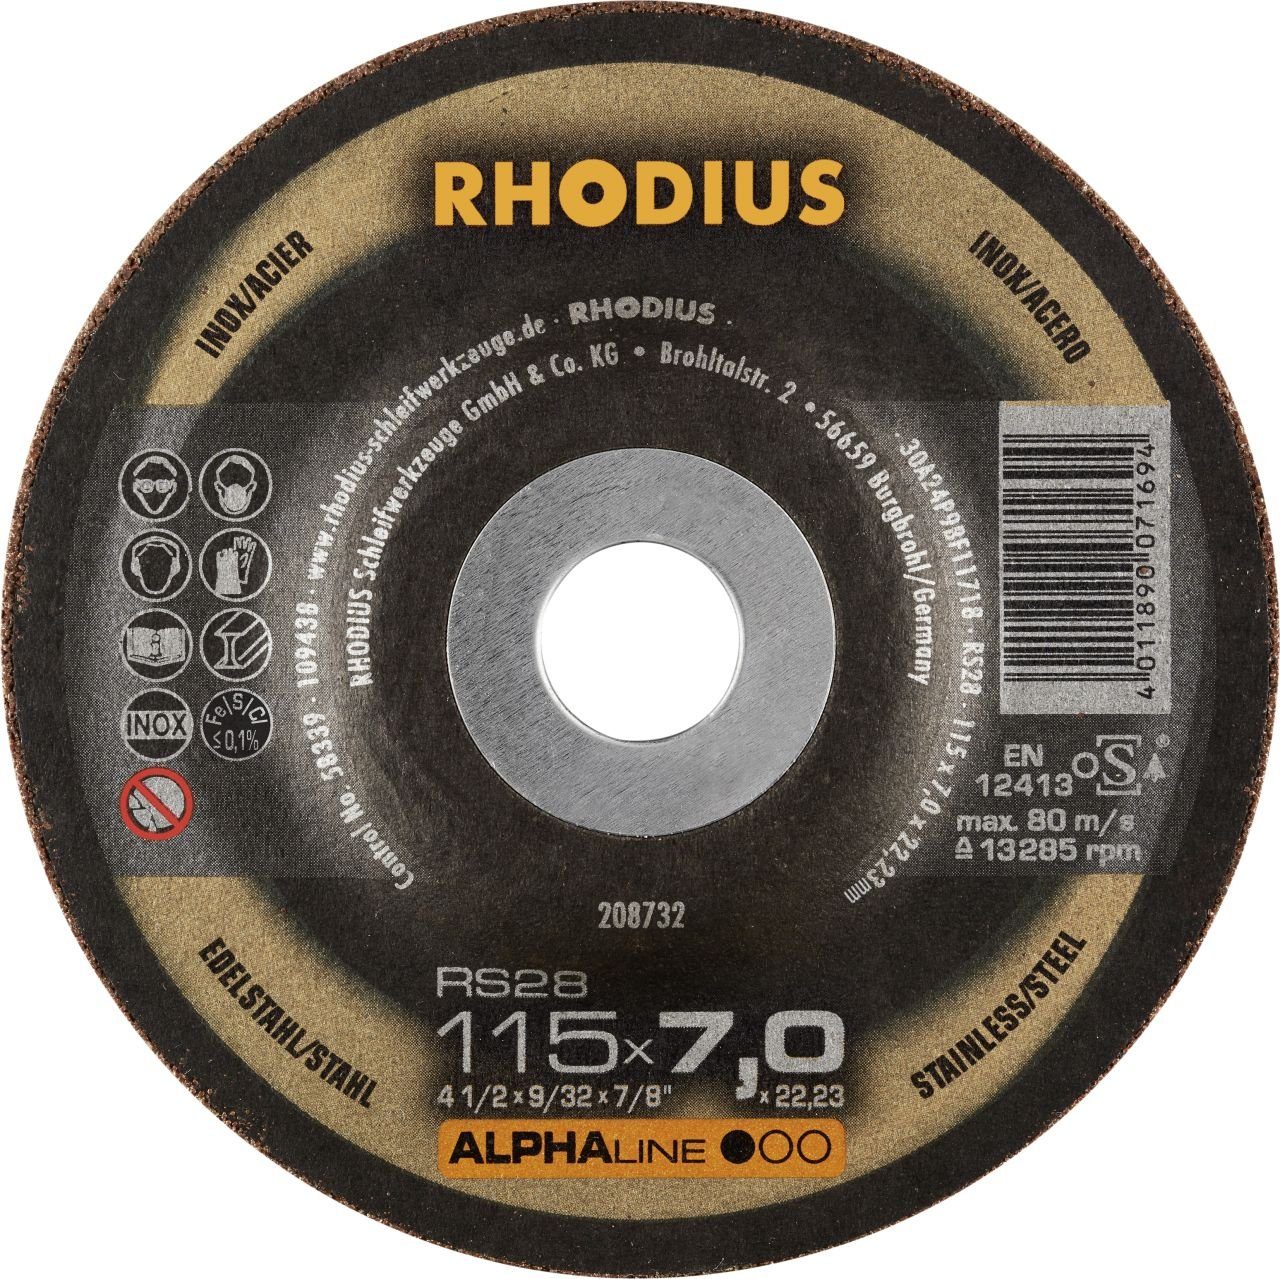 Rhodius Winkelschleifer Rhodius RS28 Schruppscheibe Ø 115 mm Bohrung 22,23 | Winkelschleifer